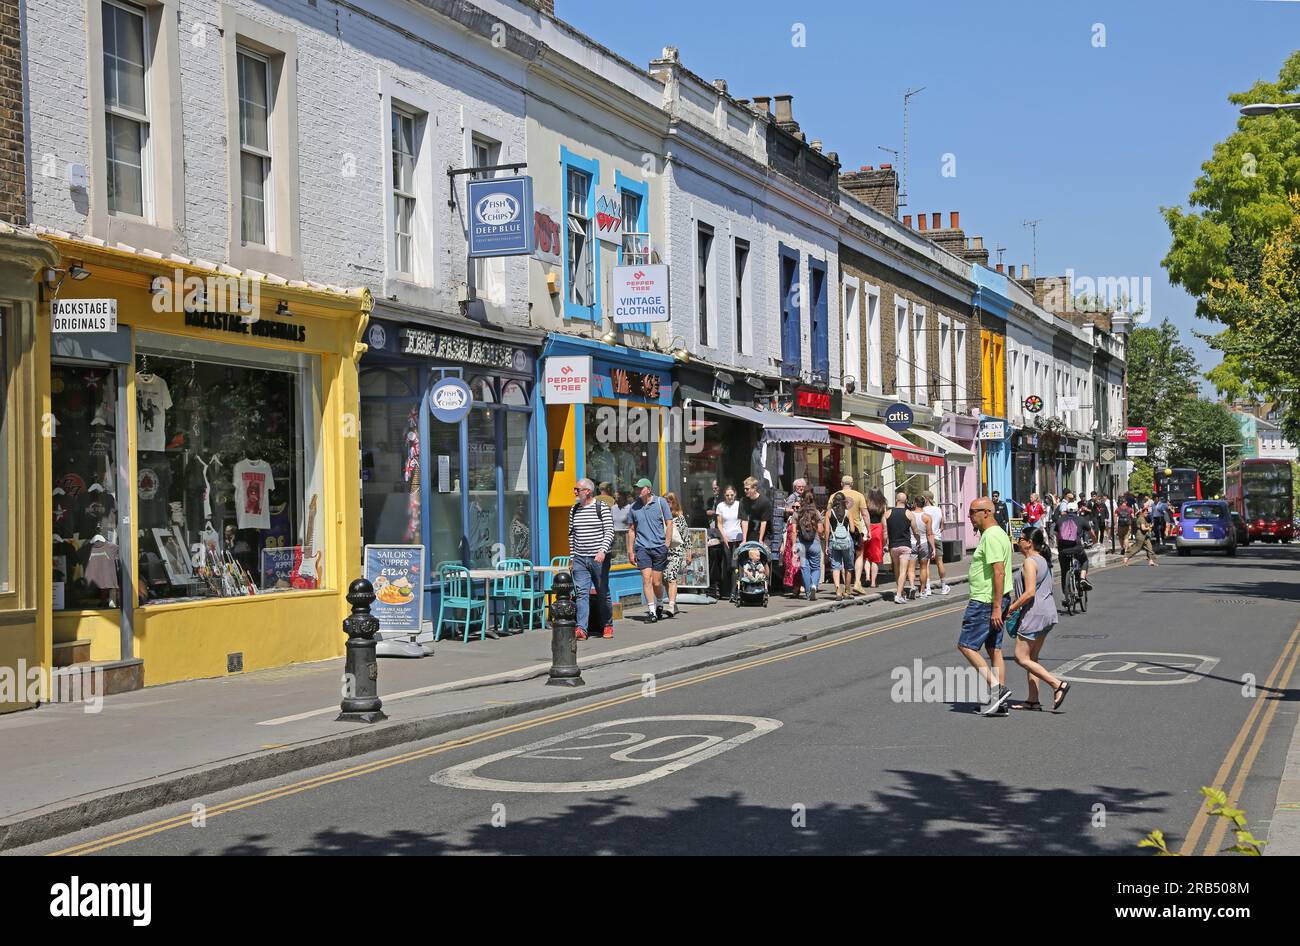 London, Vereinigtes Königreich: Geschäfte und Cafés an der Pembridge Road, Notting Hill Gate, einer der reichsten Gegenden Londons. Beschäftigt mit Leuten an einem heißen Sommertag. Stockfoto